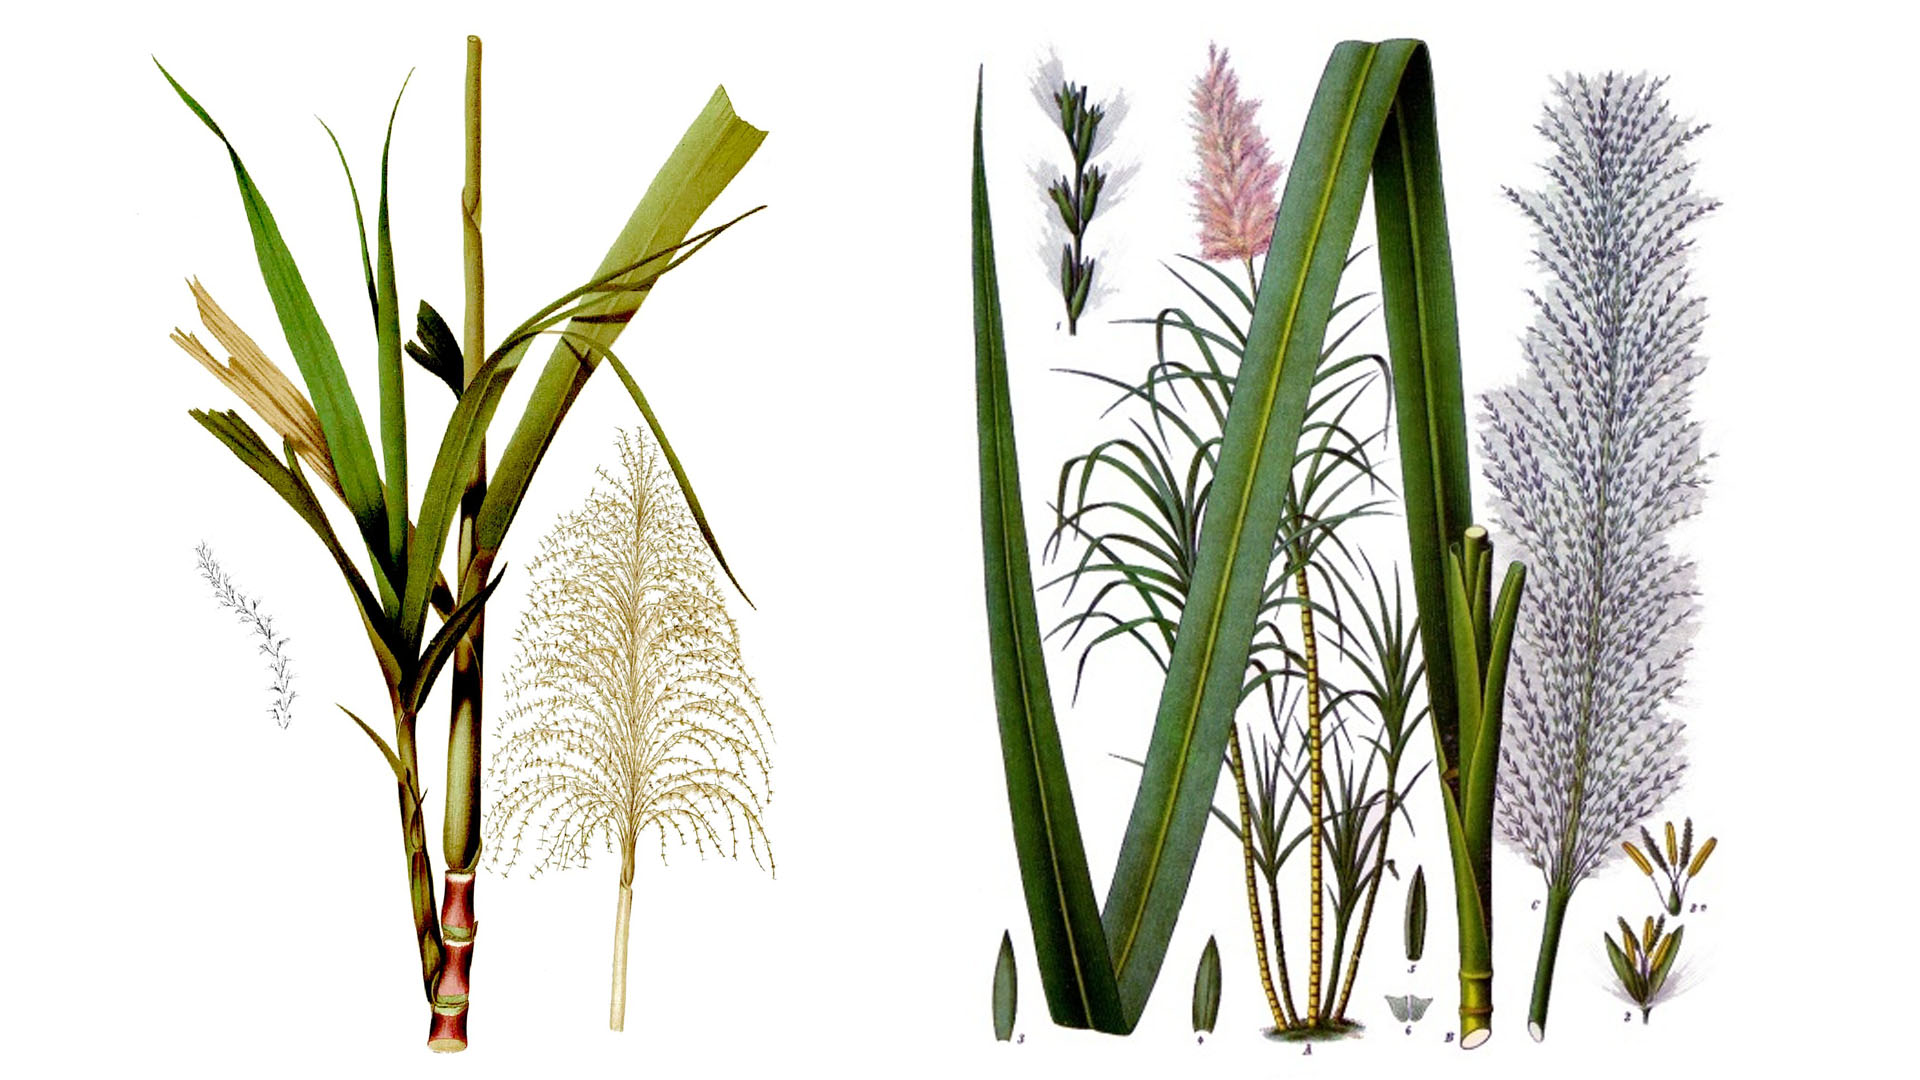 Zuckerrohr ähnlich dem Bambus eine asiatische Pflanze aus der Familie der Gräser.